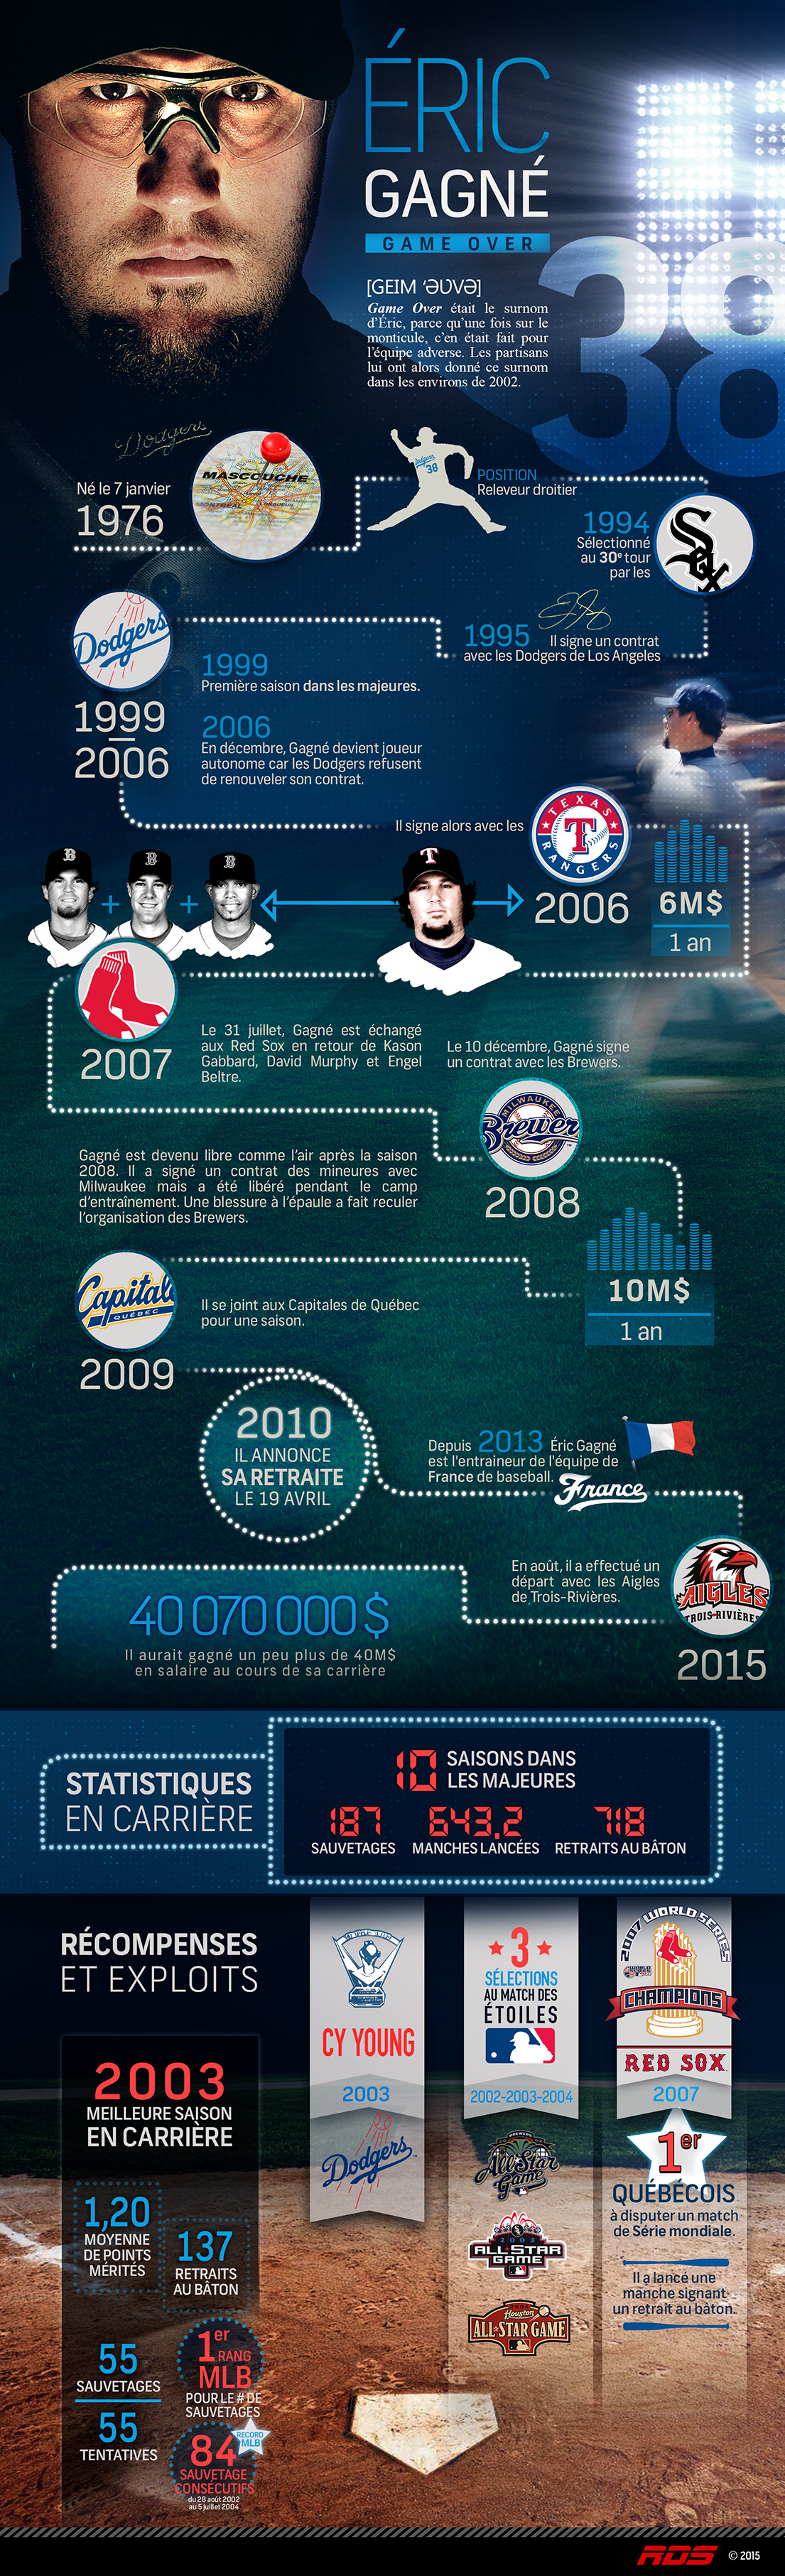 Infographie sur Éric Gagné - MLB